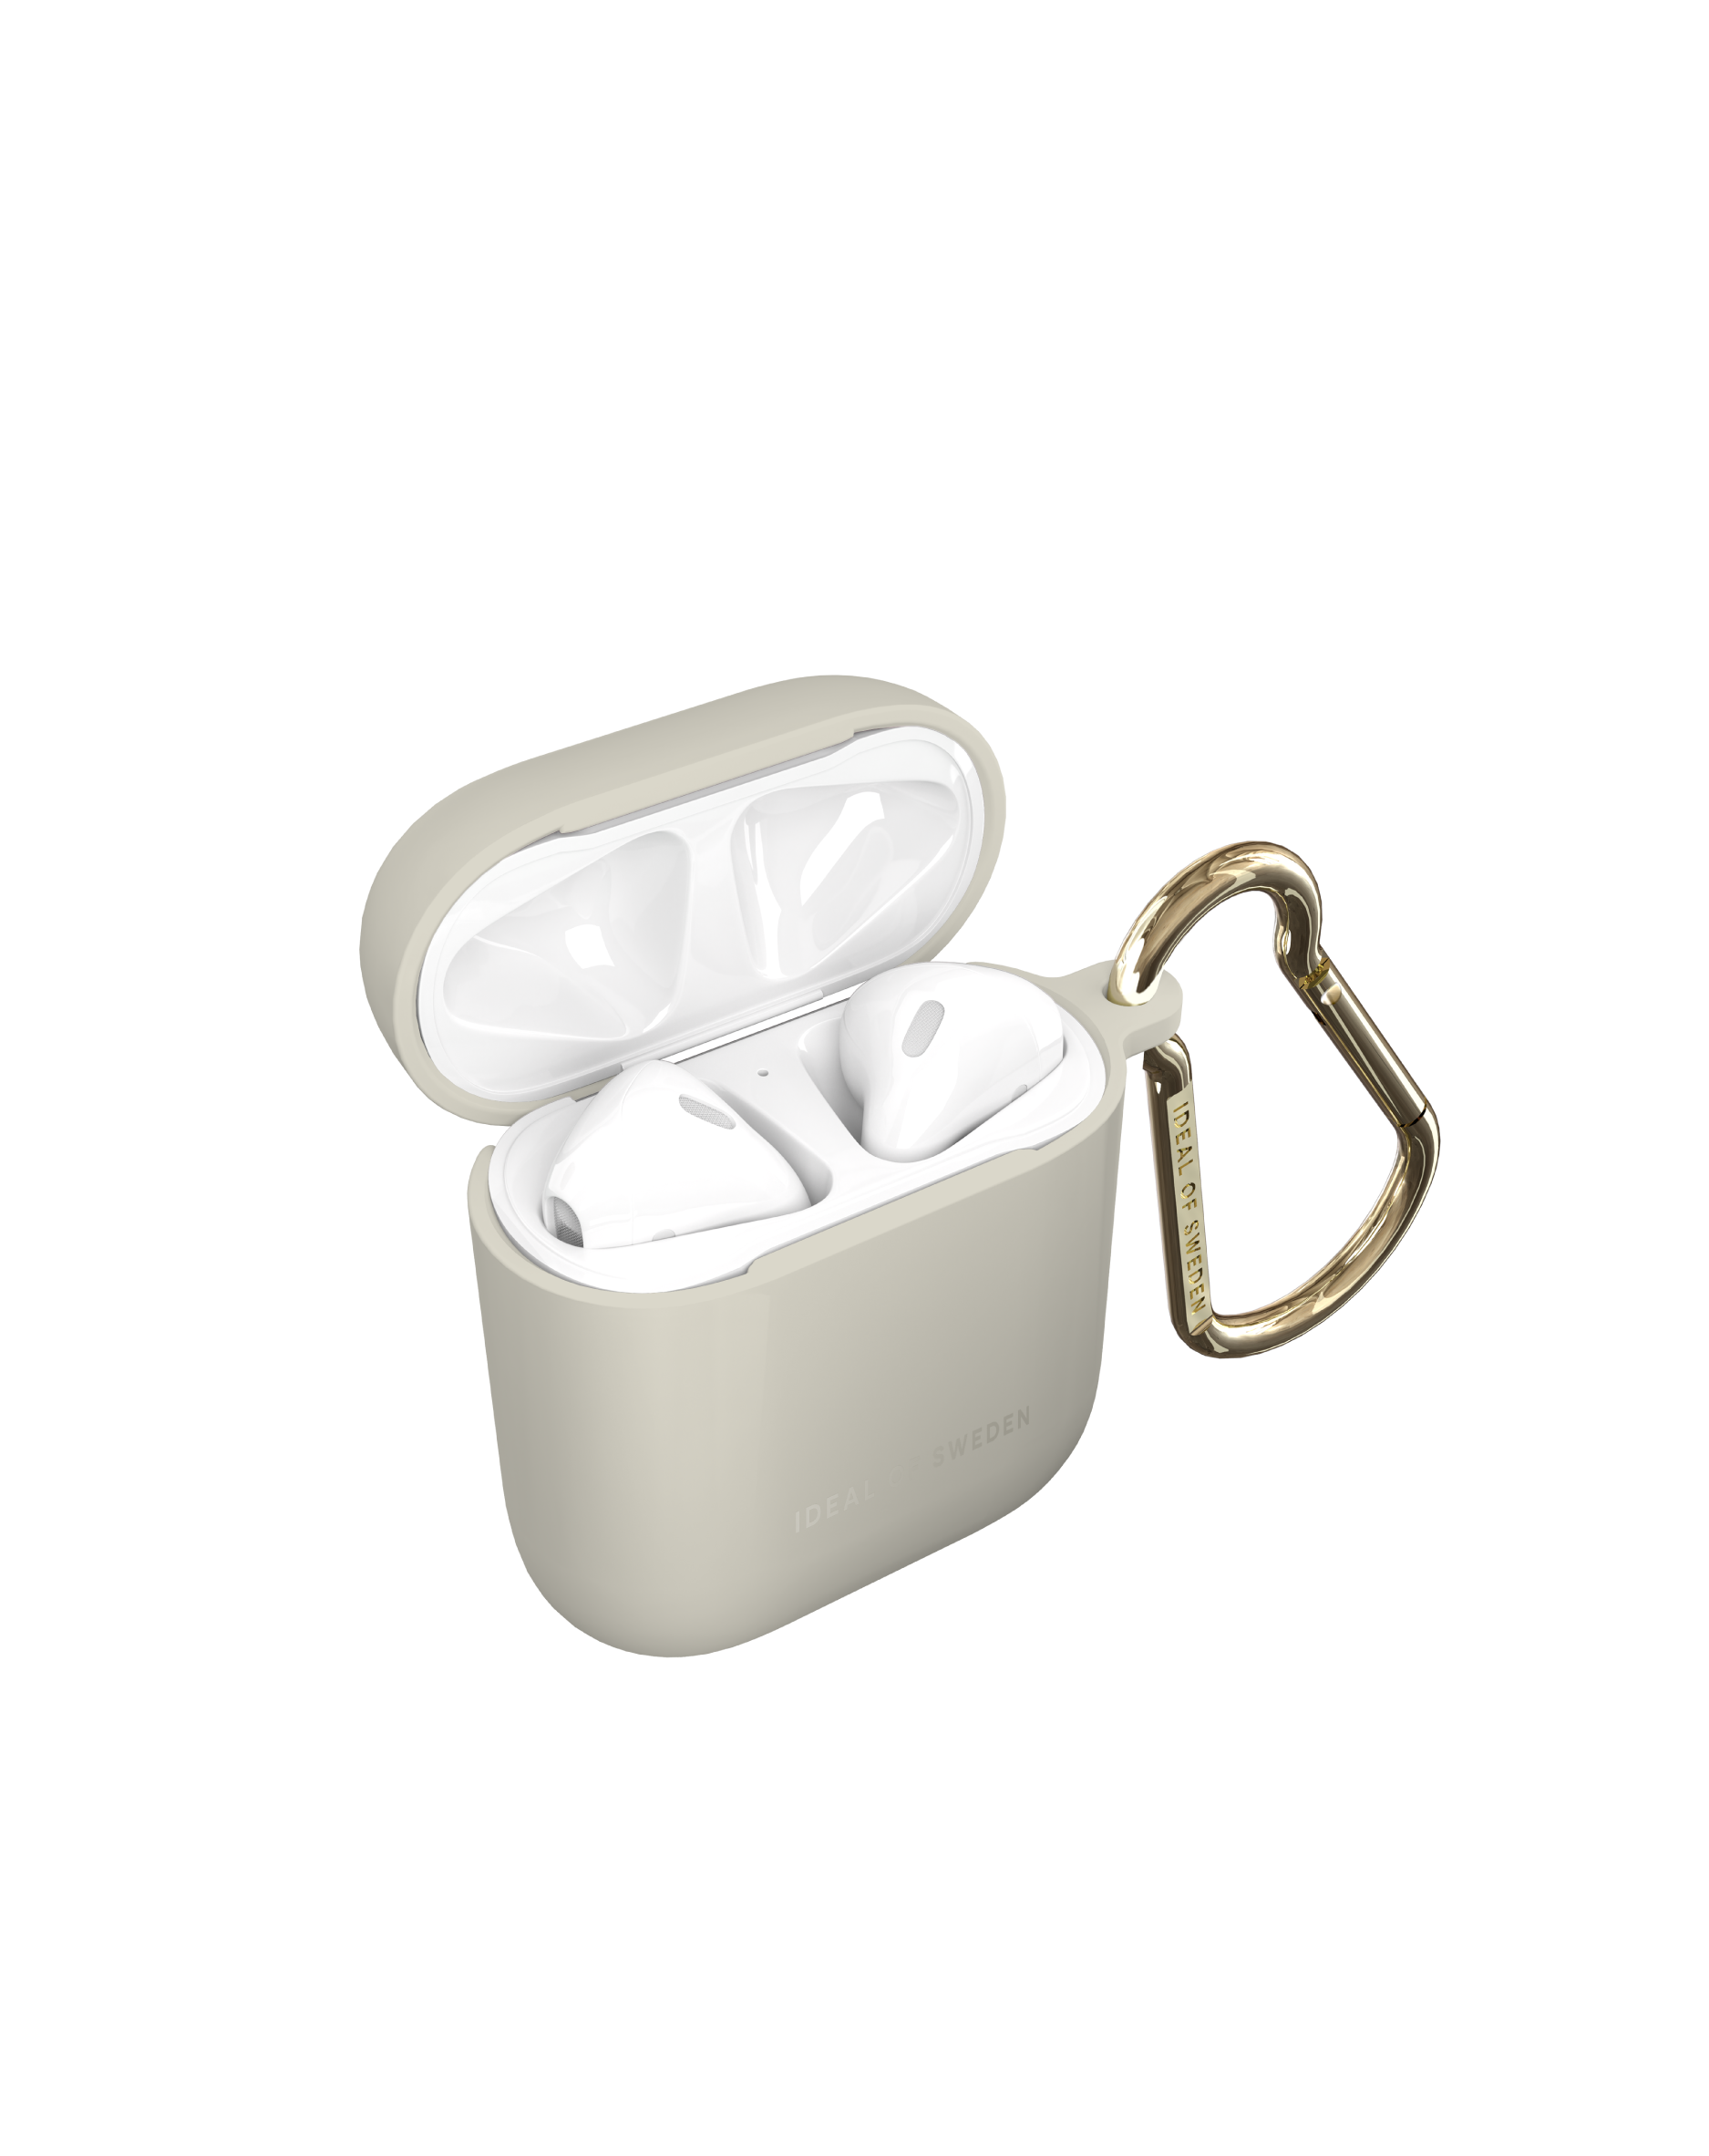 IDEAL OF SWEDEN IDAPCAS22-393 AirPod Apple passend Ecru Full für: Cover Case